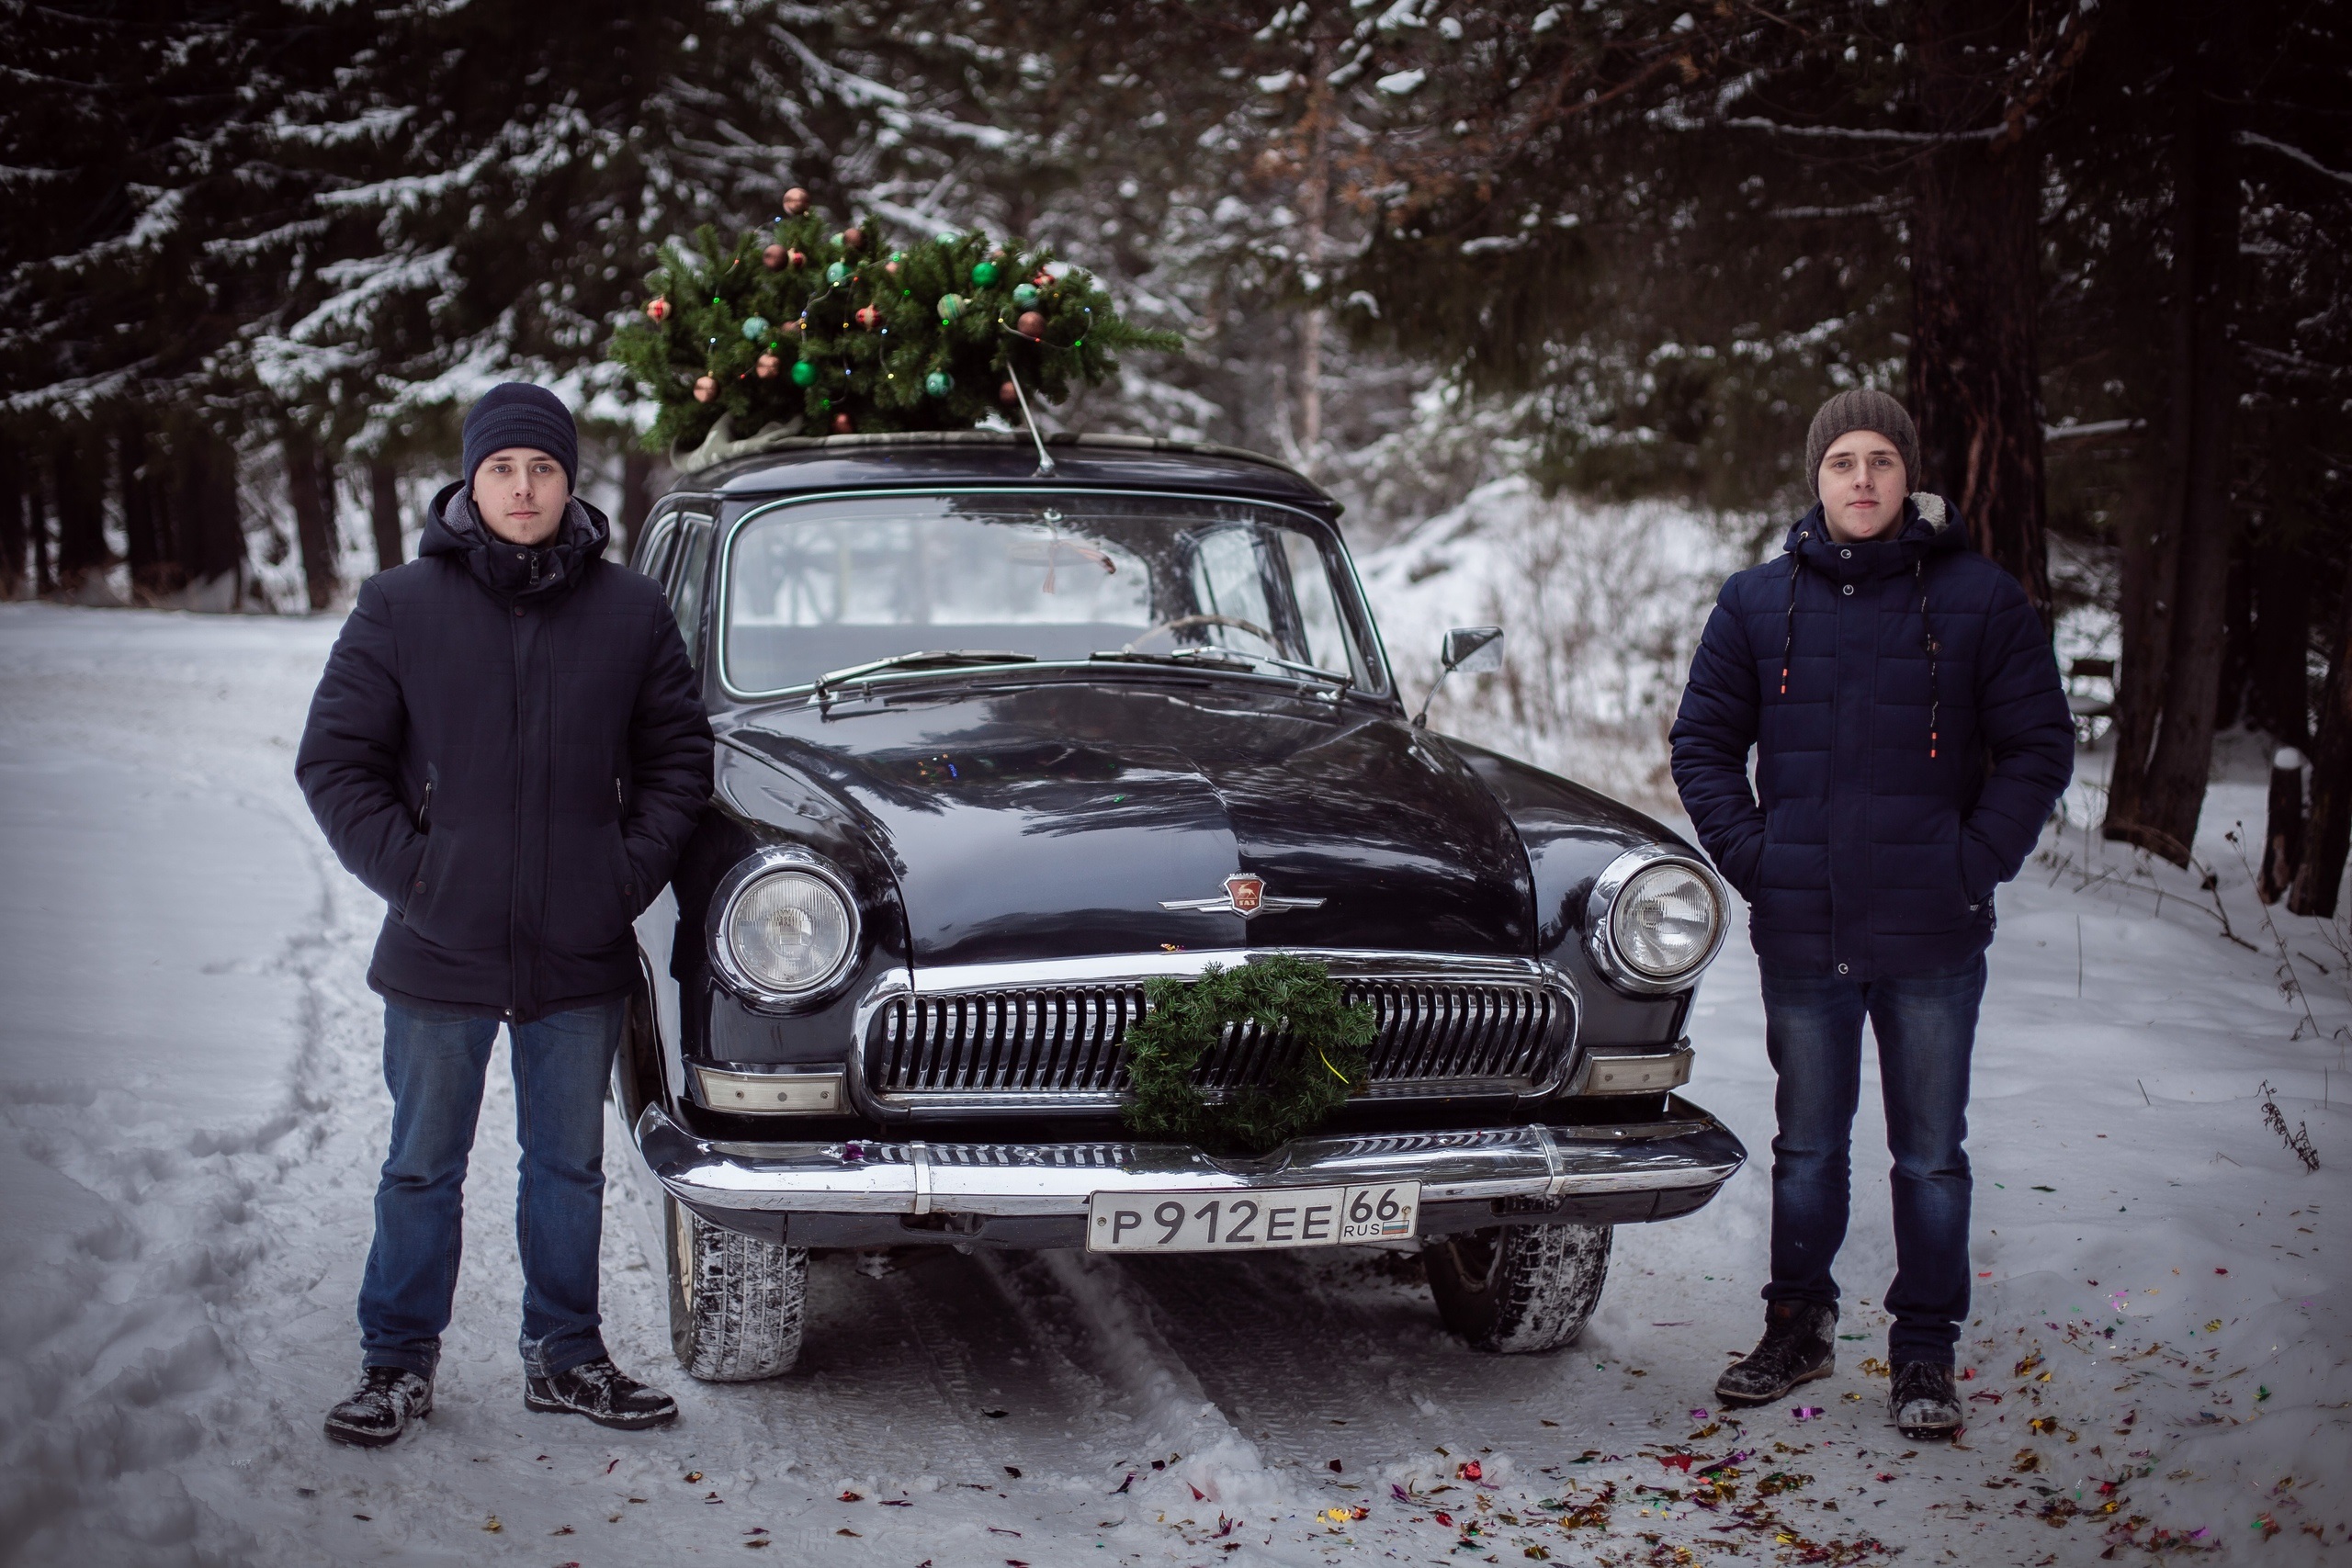 Чтобы разбираться в автомобилях и научиться их чинить, Евгений и Максим Карлины поступили в Исовский техникум на автомехаников, и самостоятельная реставрация автомобиля стала для них лучшей профессиональной практикой / 